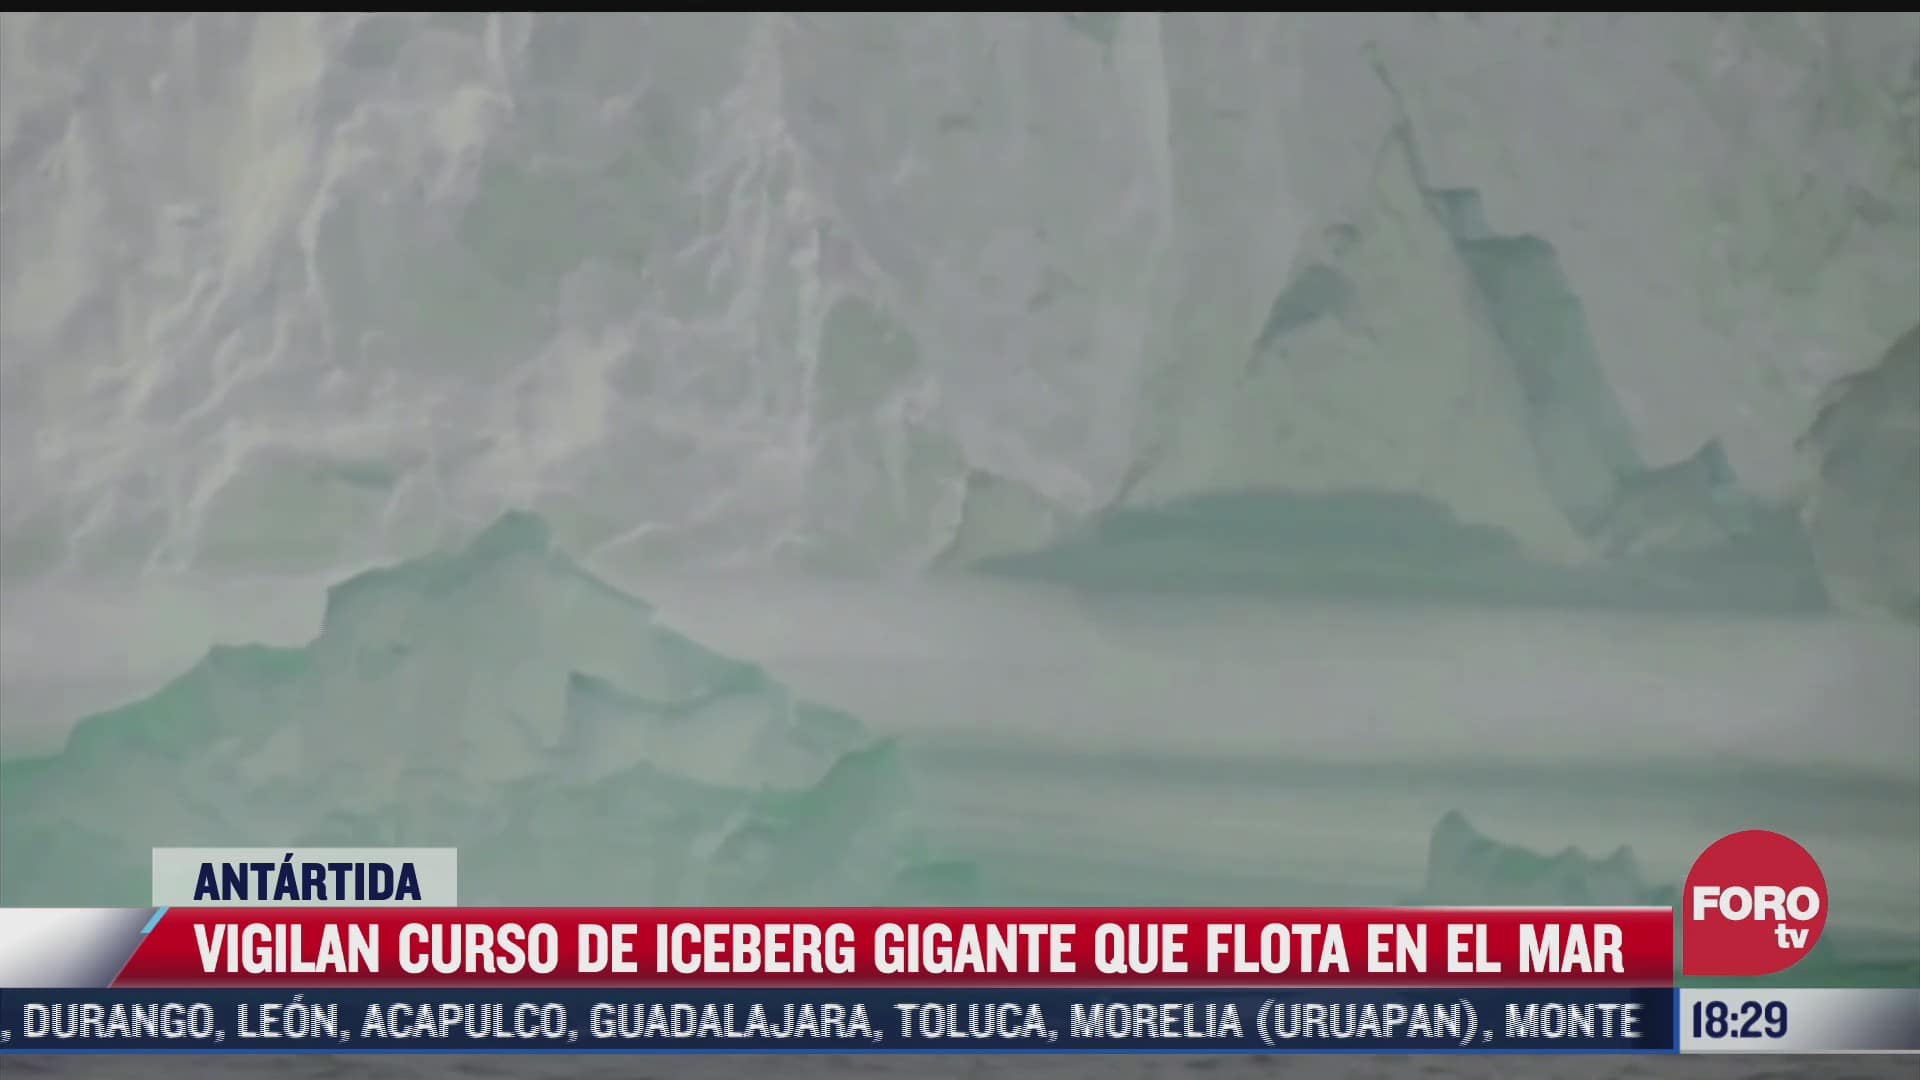 iceberg gigante flotara varios anos en el mar de antartida